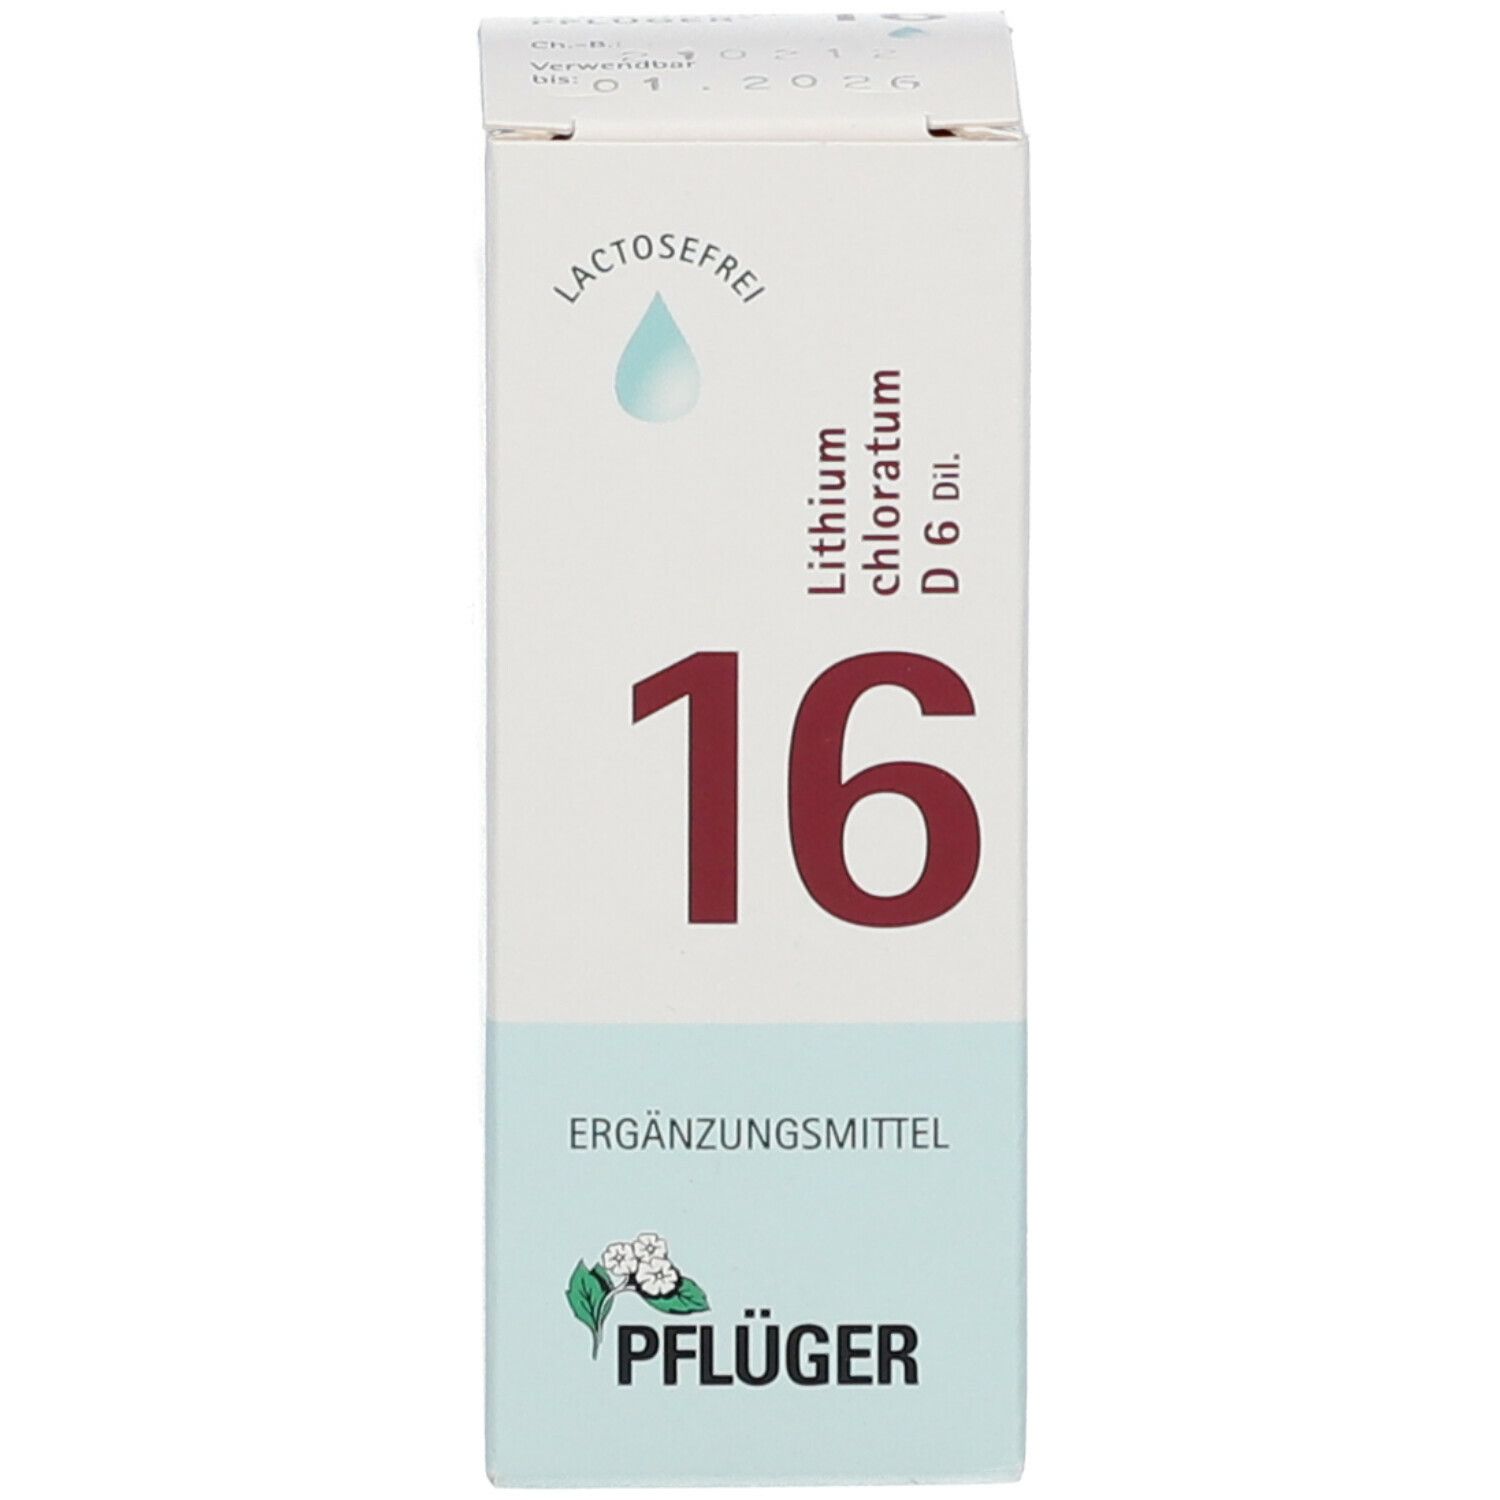 Biochemie Pflüger® 16 Lithium chloratum D6 Tropfen